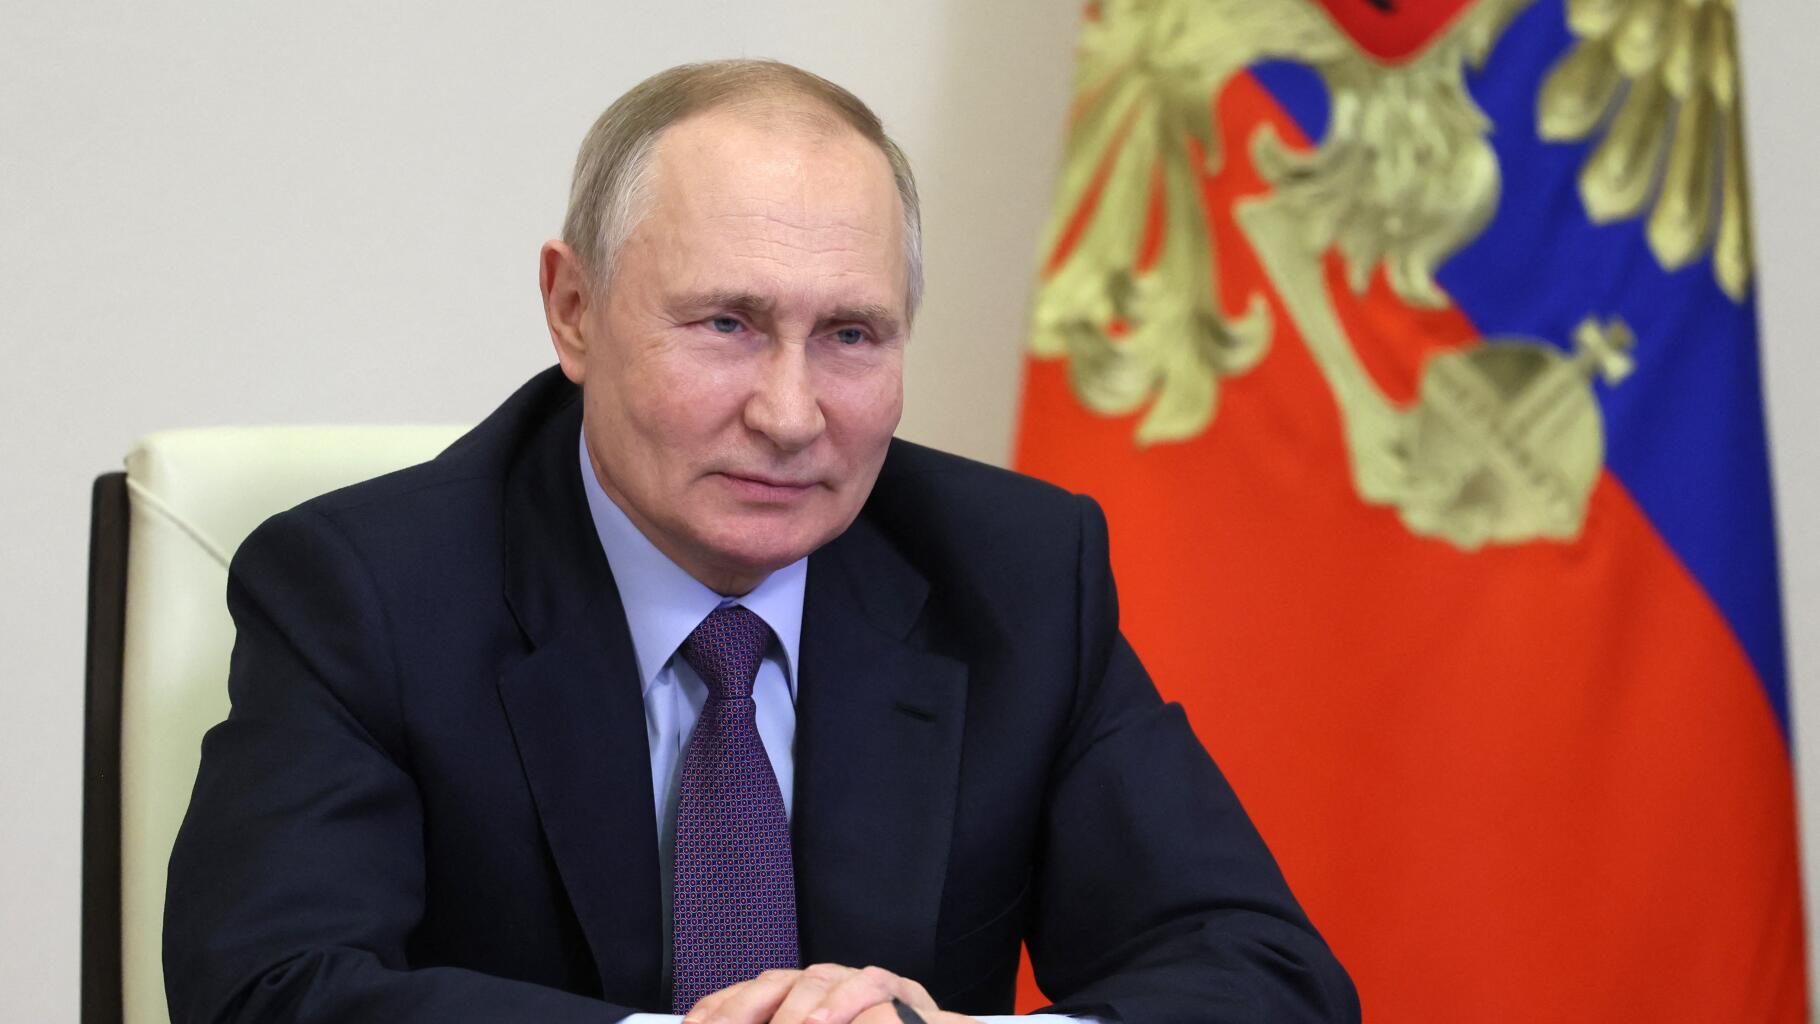 Poutine verrouille un peu plus les libertés individuelles en Russie